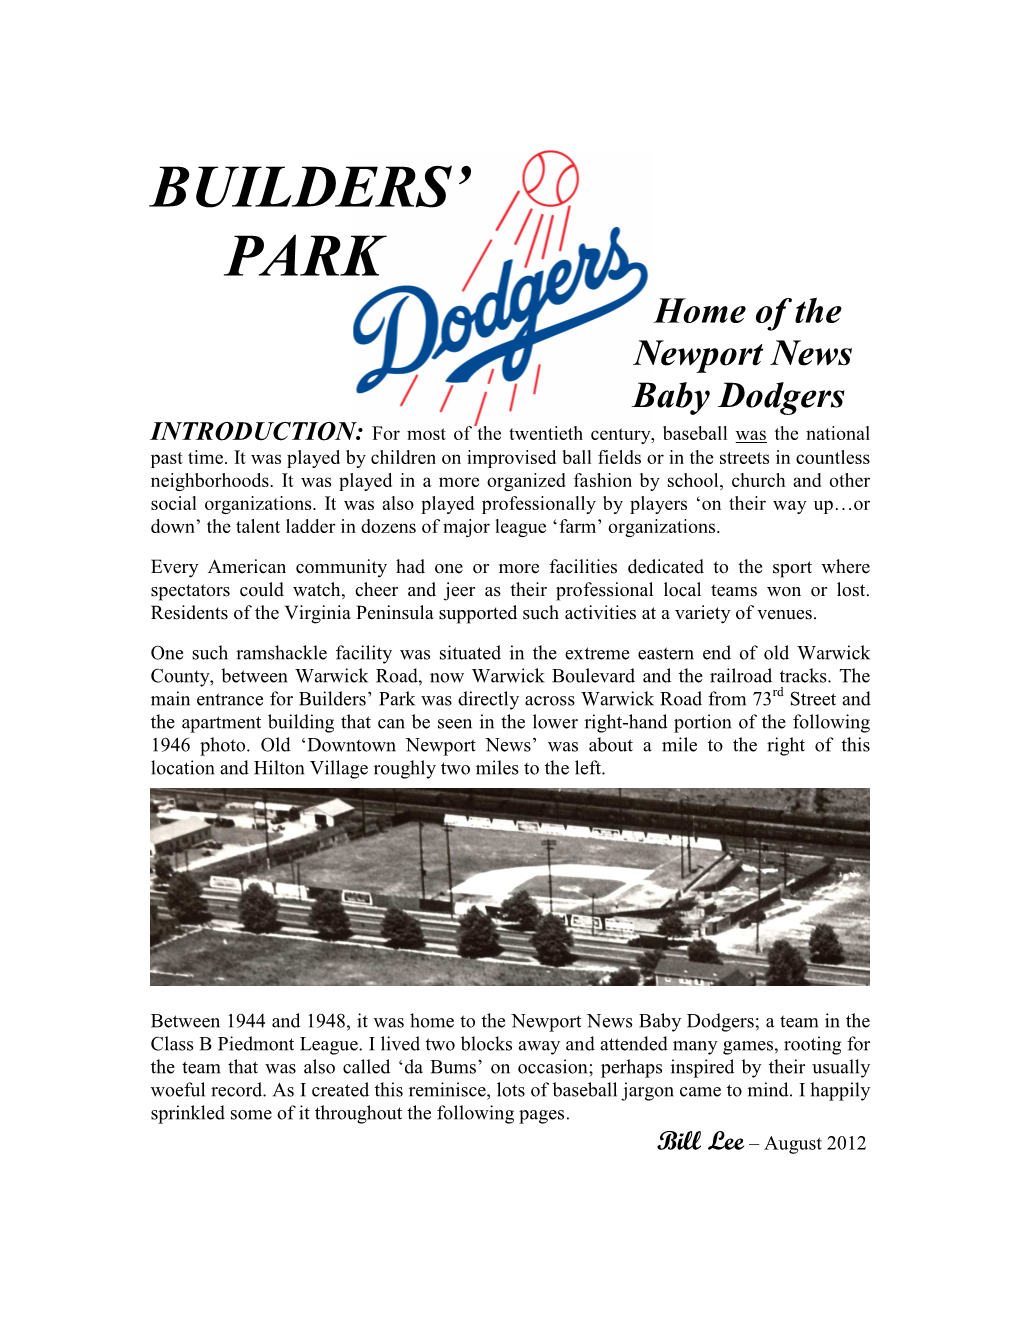 Builders' Park Dodgers